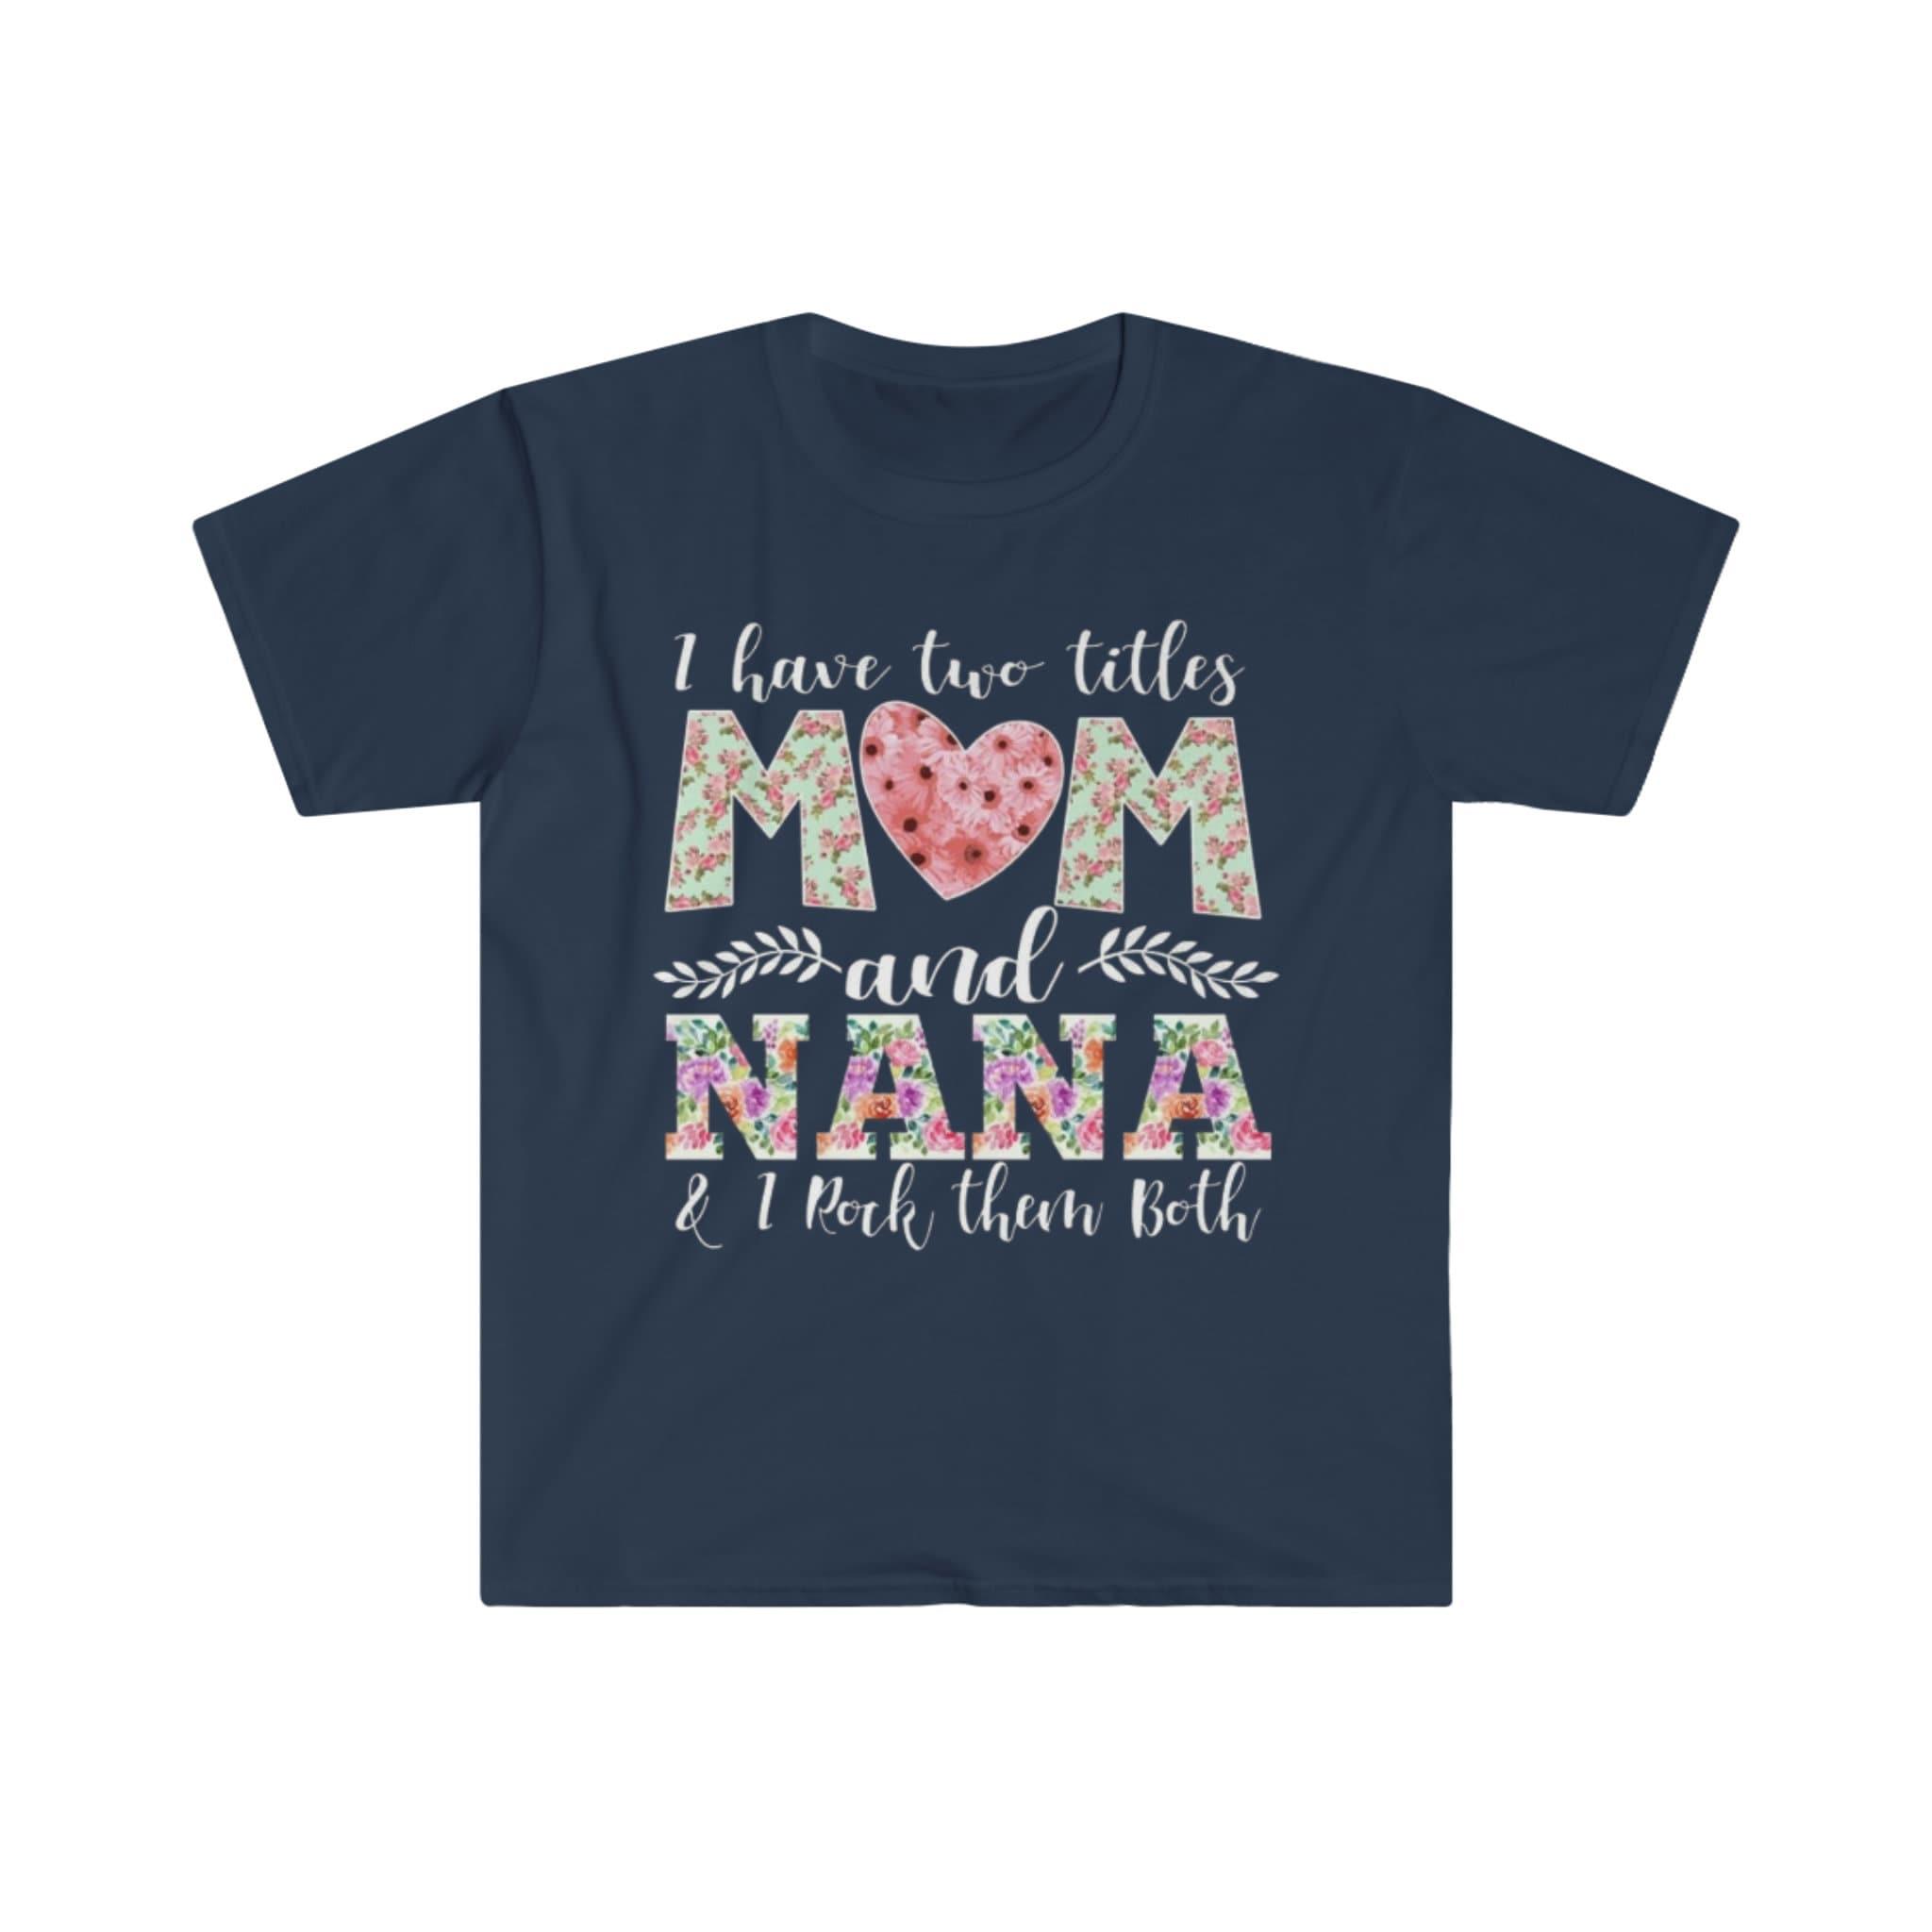 Turiu du titulus mama ir Nana, ir aš juos abu žaviu marškinėliais, marškinėliais Nana, naujus močiutės marškinėlius, močiutės ir mamos marškinėlius, močiutės dovaną - plusminusco.com